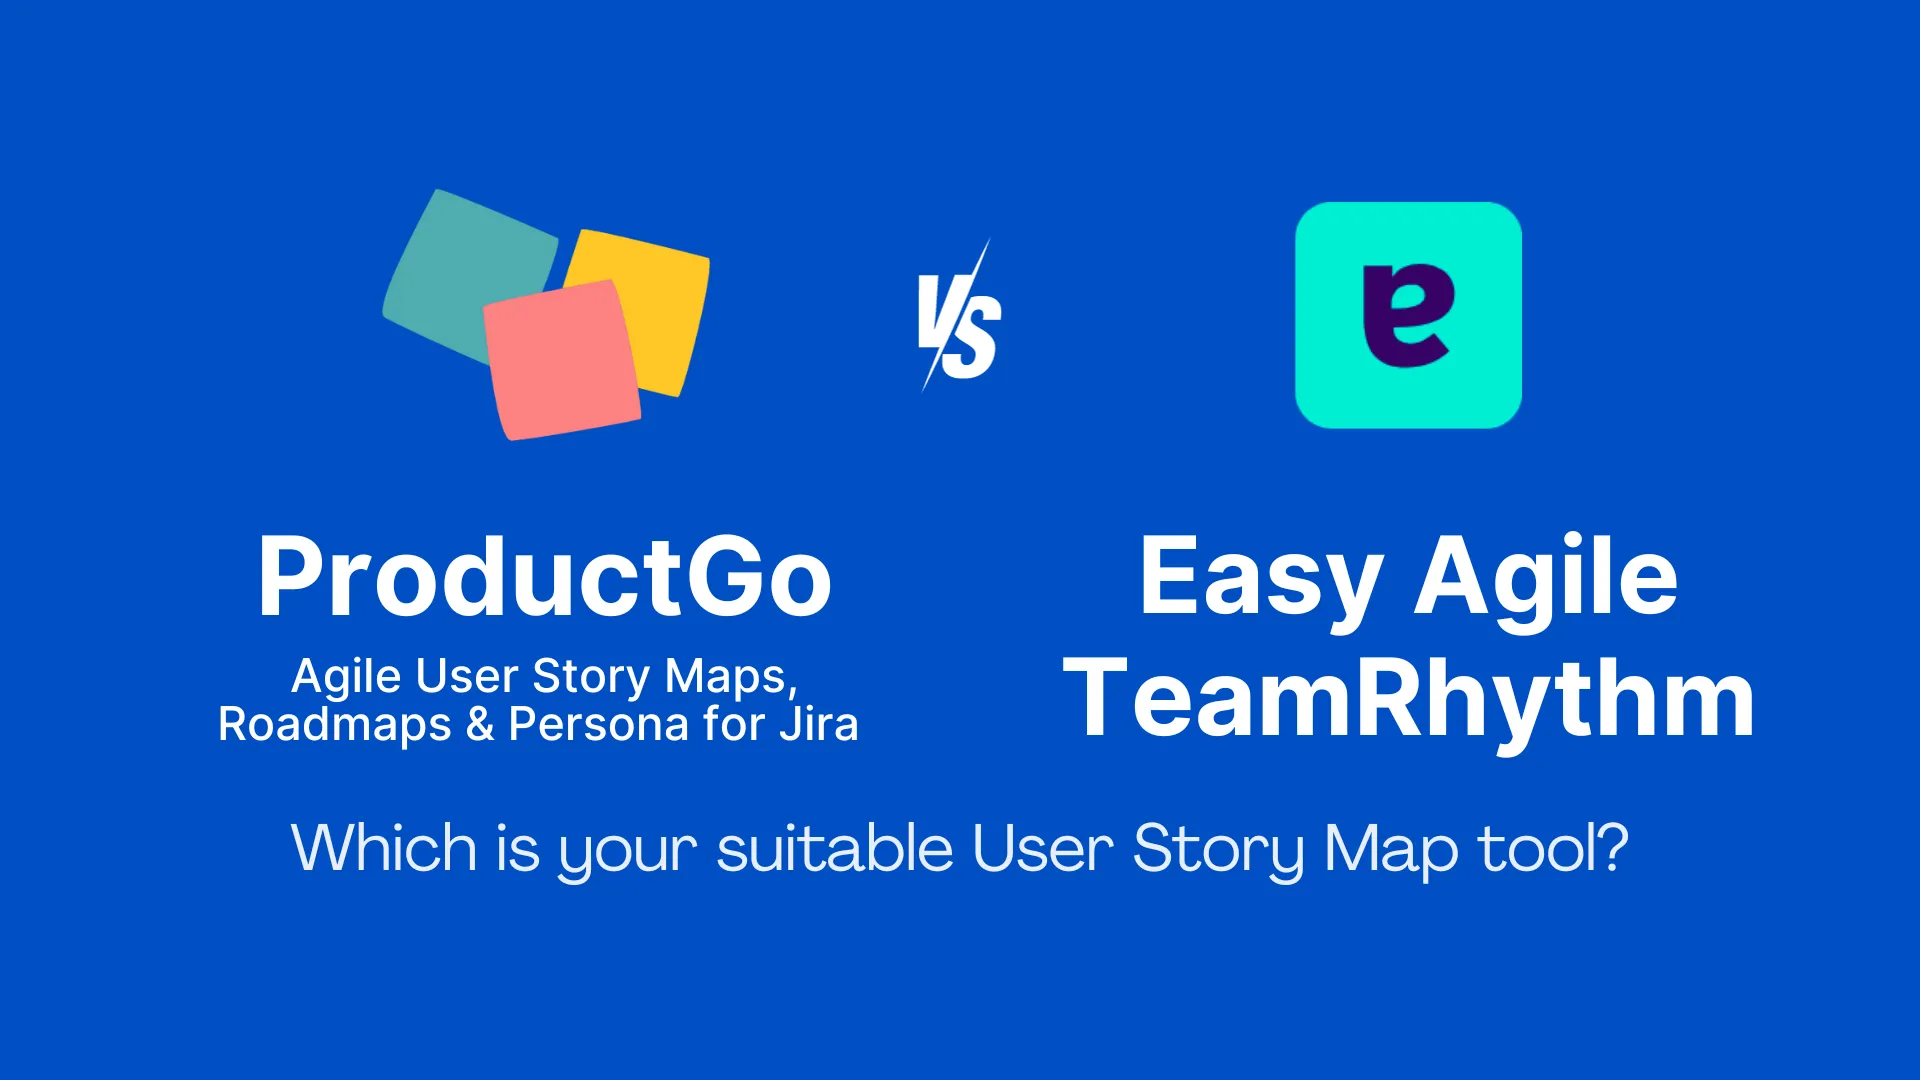 ProductGo vs. Easy Agile TeamRhythm